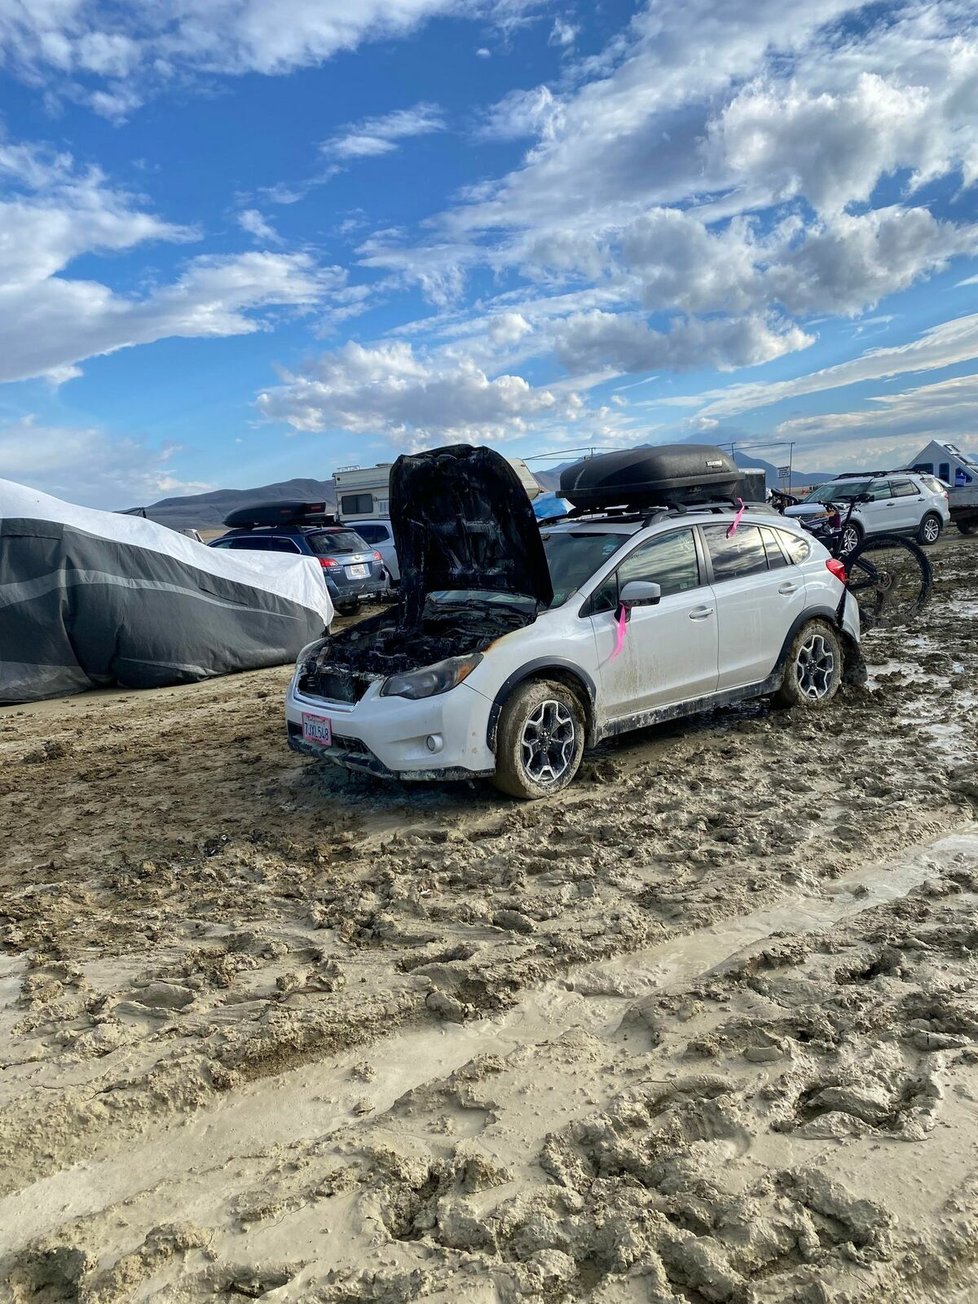 Vozidlo uvízlé na americkém festivalu Burning Man.